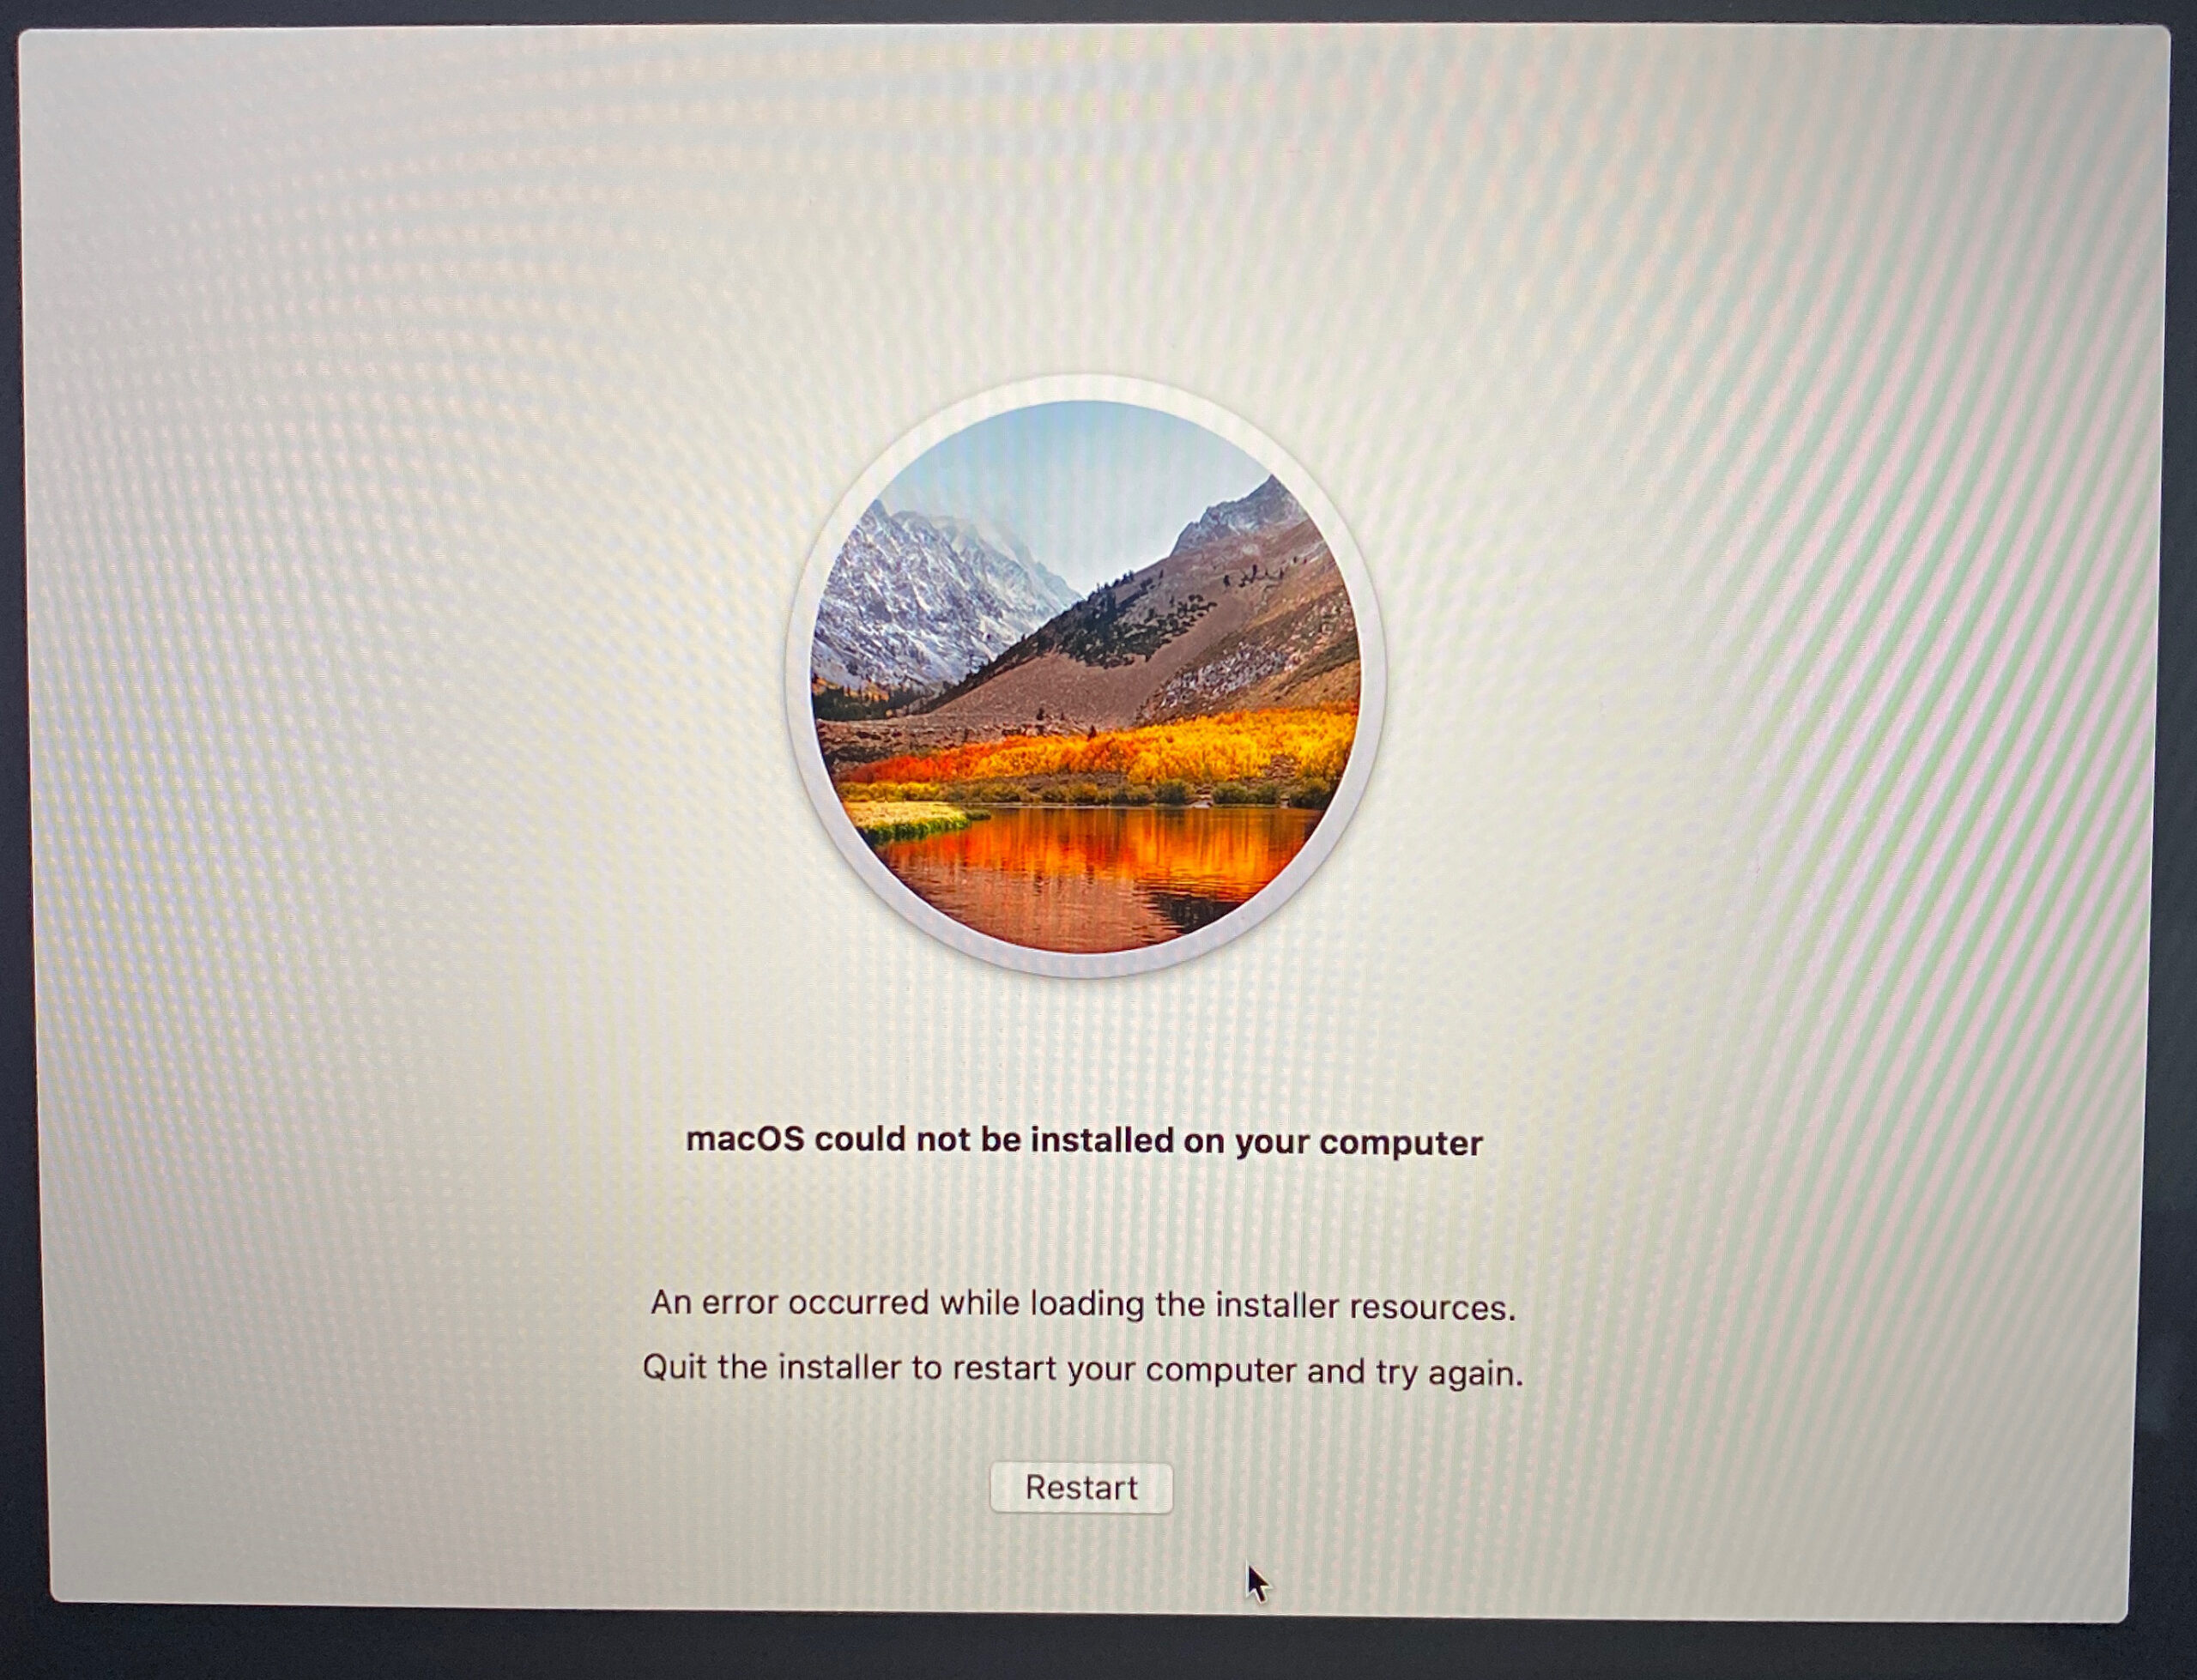 Den vigtigste fejlmeddelelse for MacOS kunne ikke installeres-fejlen er følgende